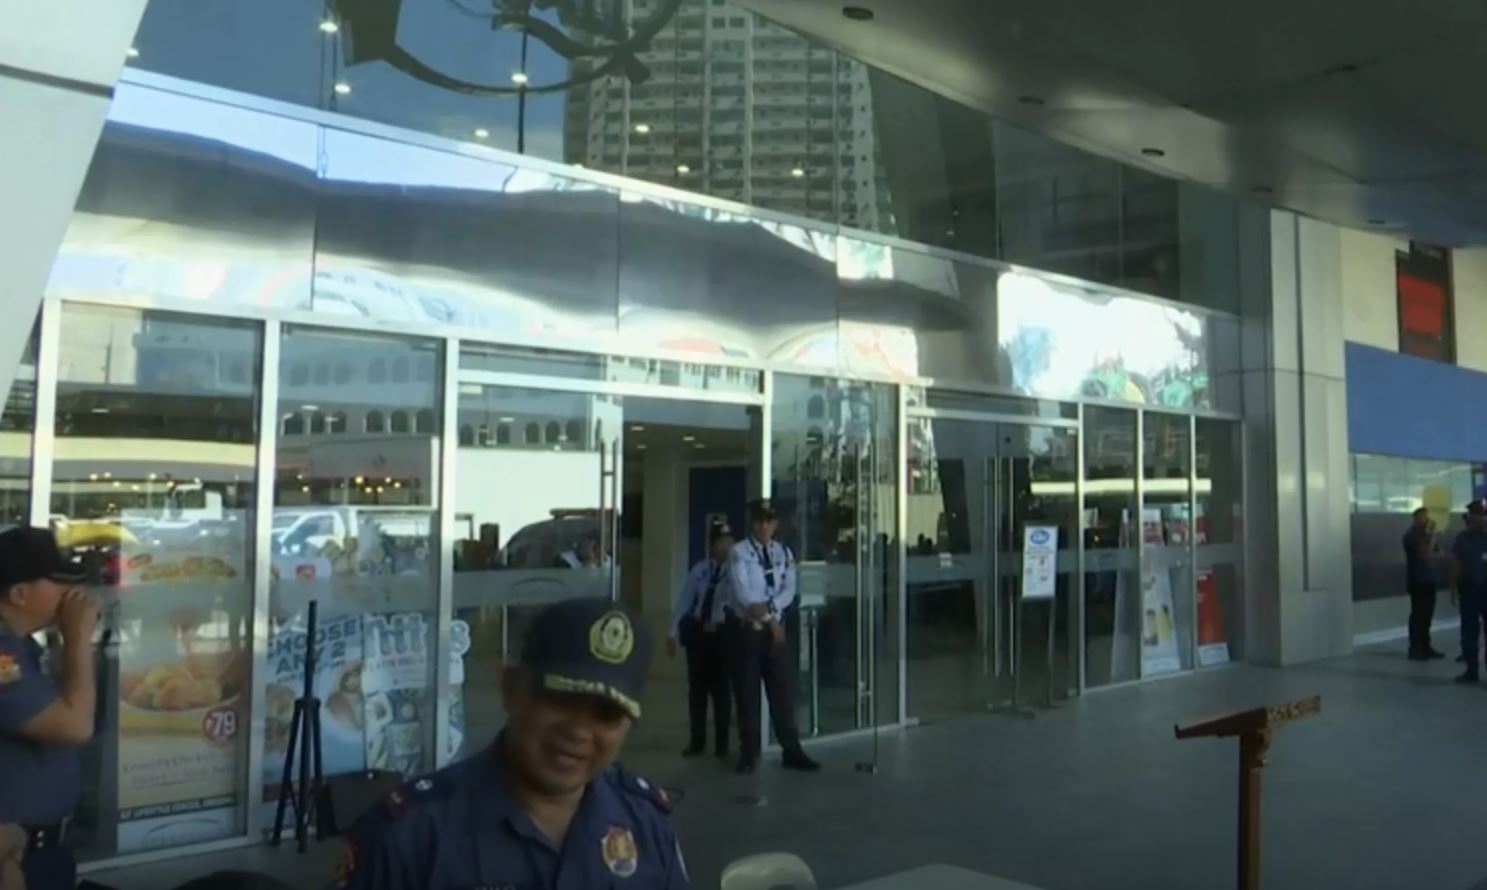 احتجاز 27 شخصا رهائن في مركز تجاري في العاصمة الفلبينية مانيلا